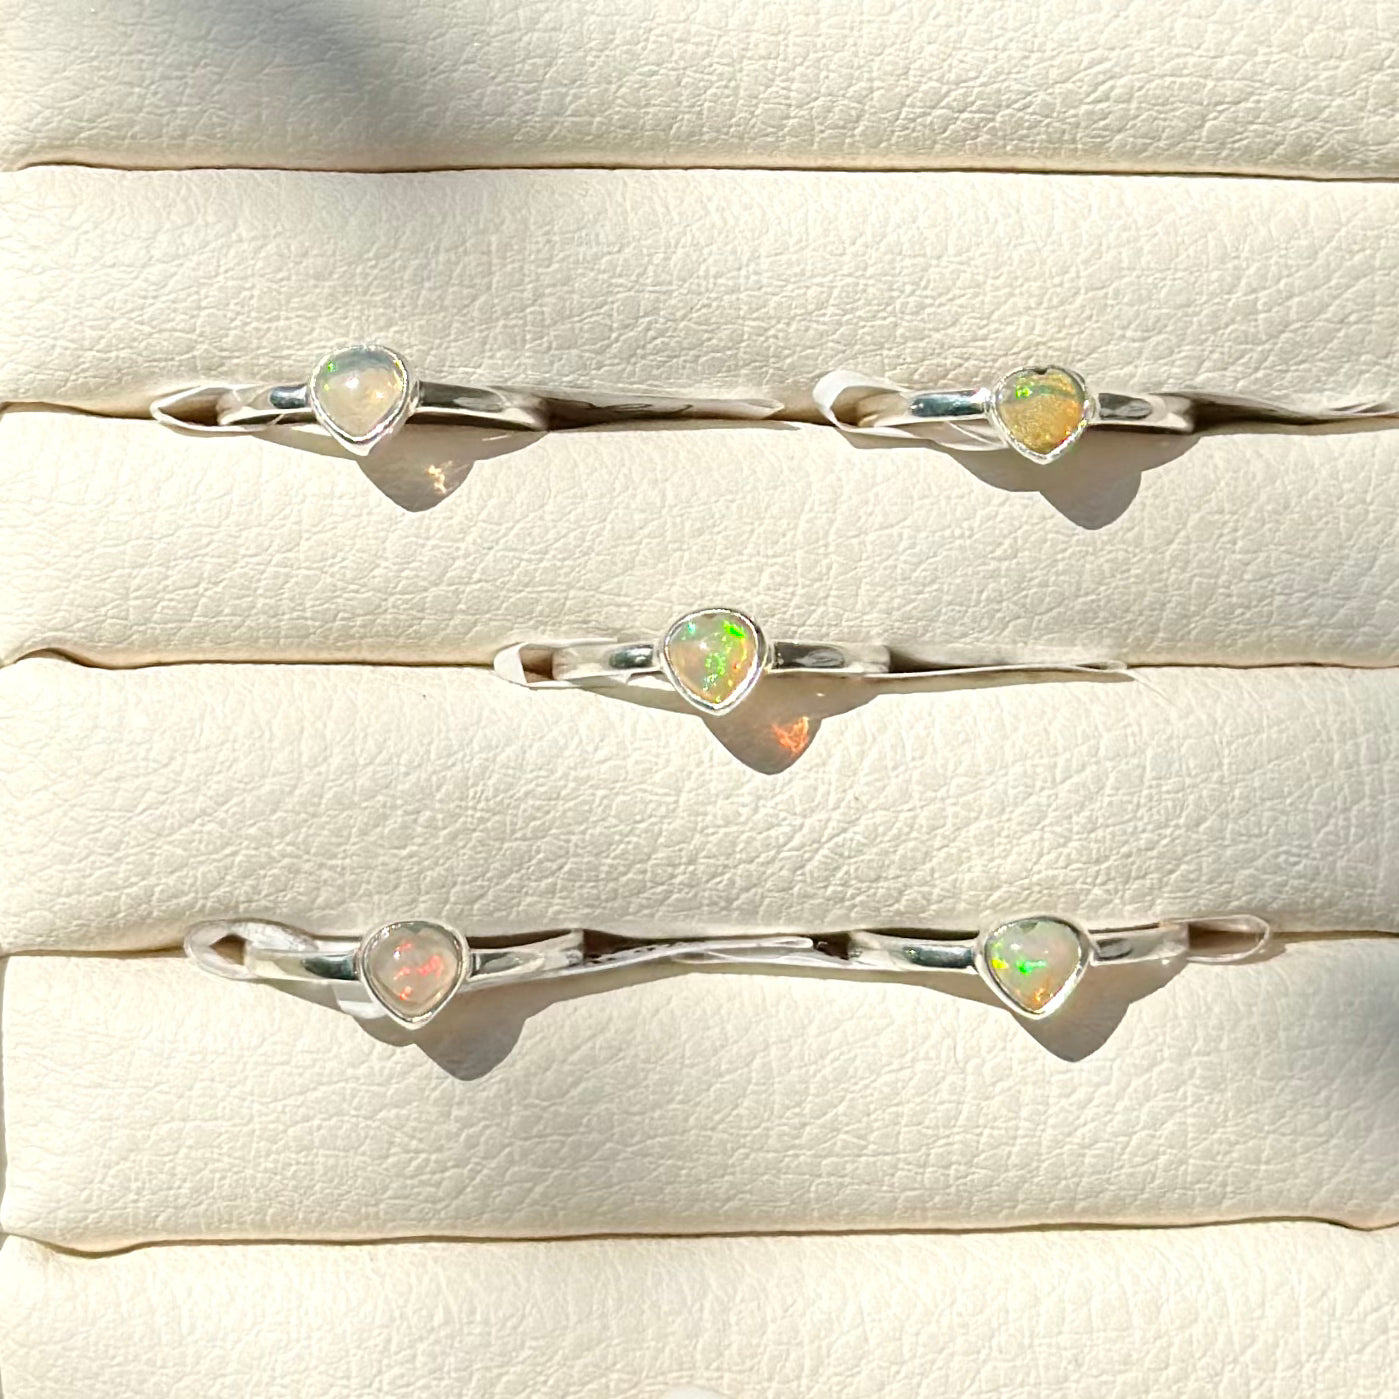 Silver925 heart opal ring 2